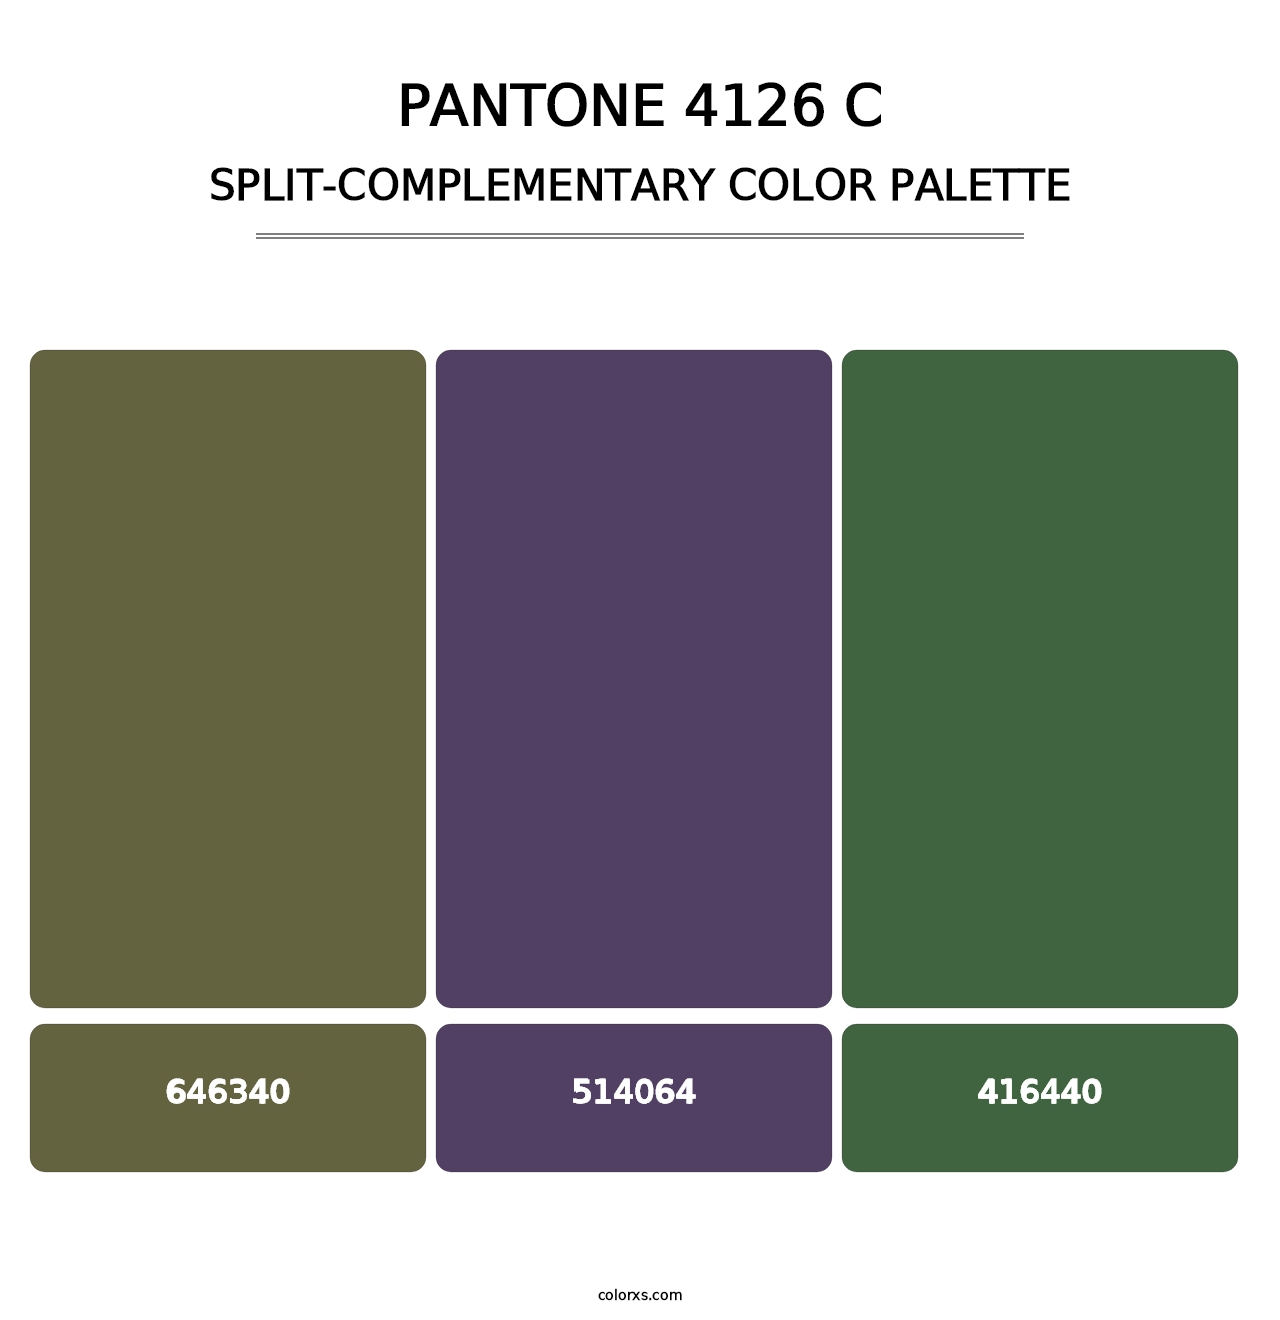 PANTONE 4126 C - Split-Complementary Color Palette